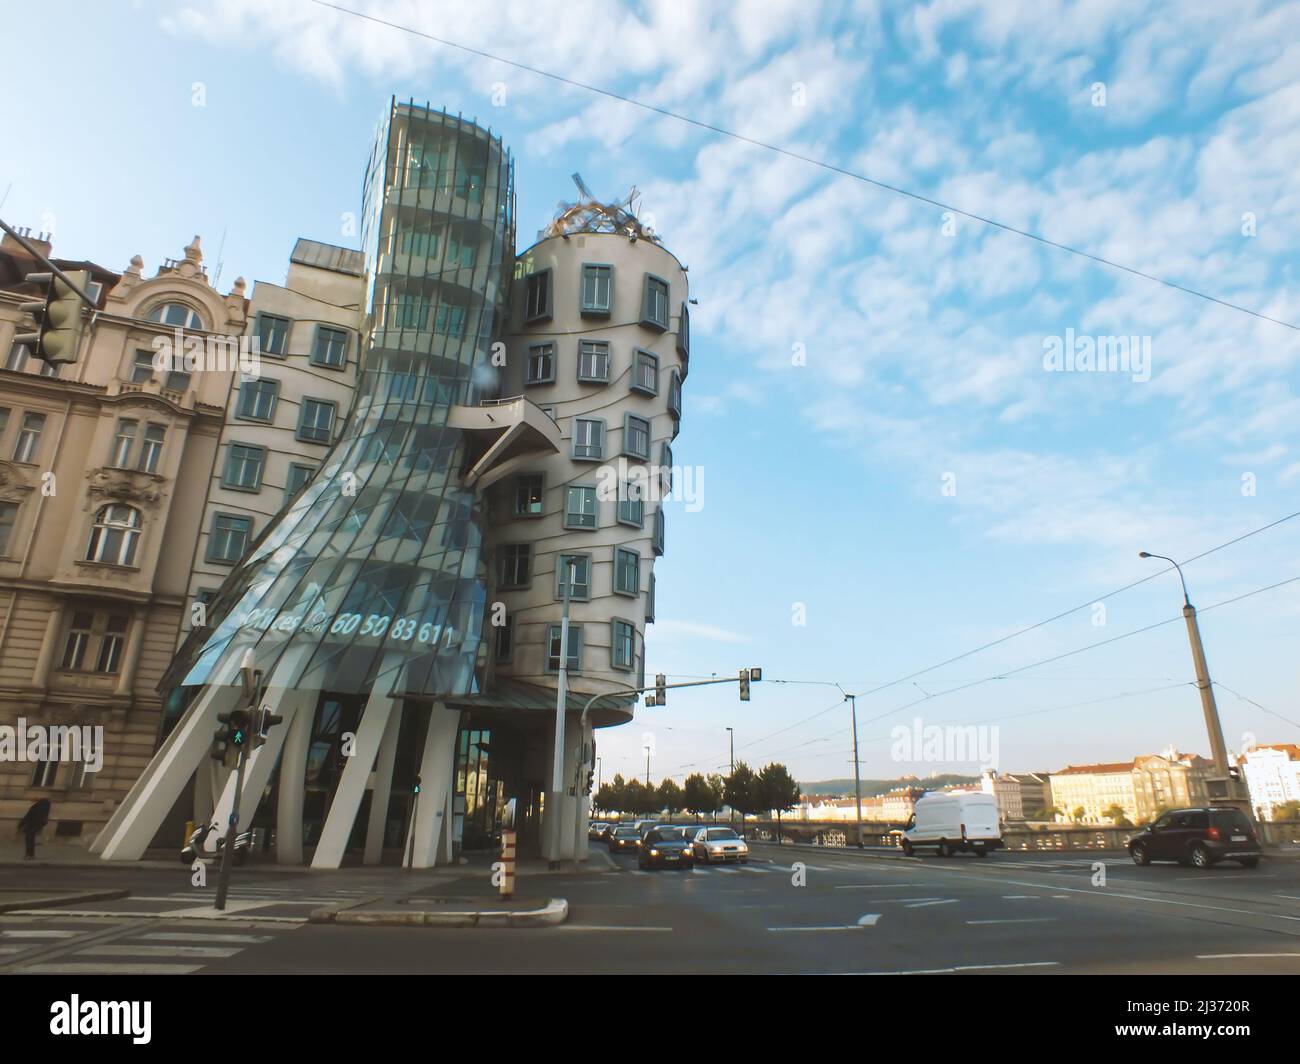 Prag, Tschechische Republik - Juni 13 2015: Tanzendes Haus in der Innenstadt von Prag, Tschechische Republik, berühmtes modernes Wahrzeichen, entworfen von Frank O. Gehry Stockfoto